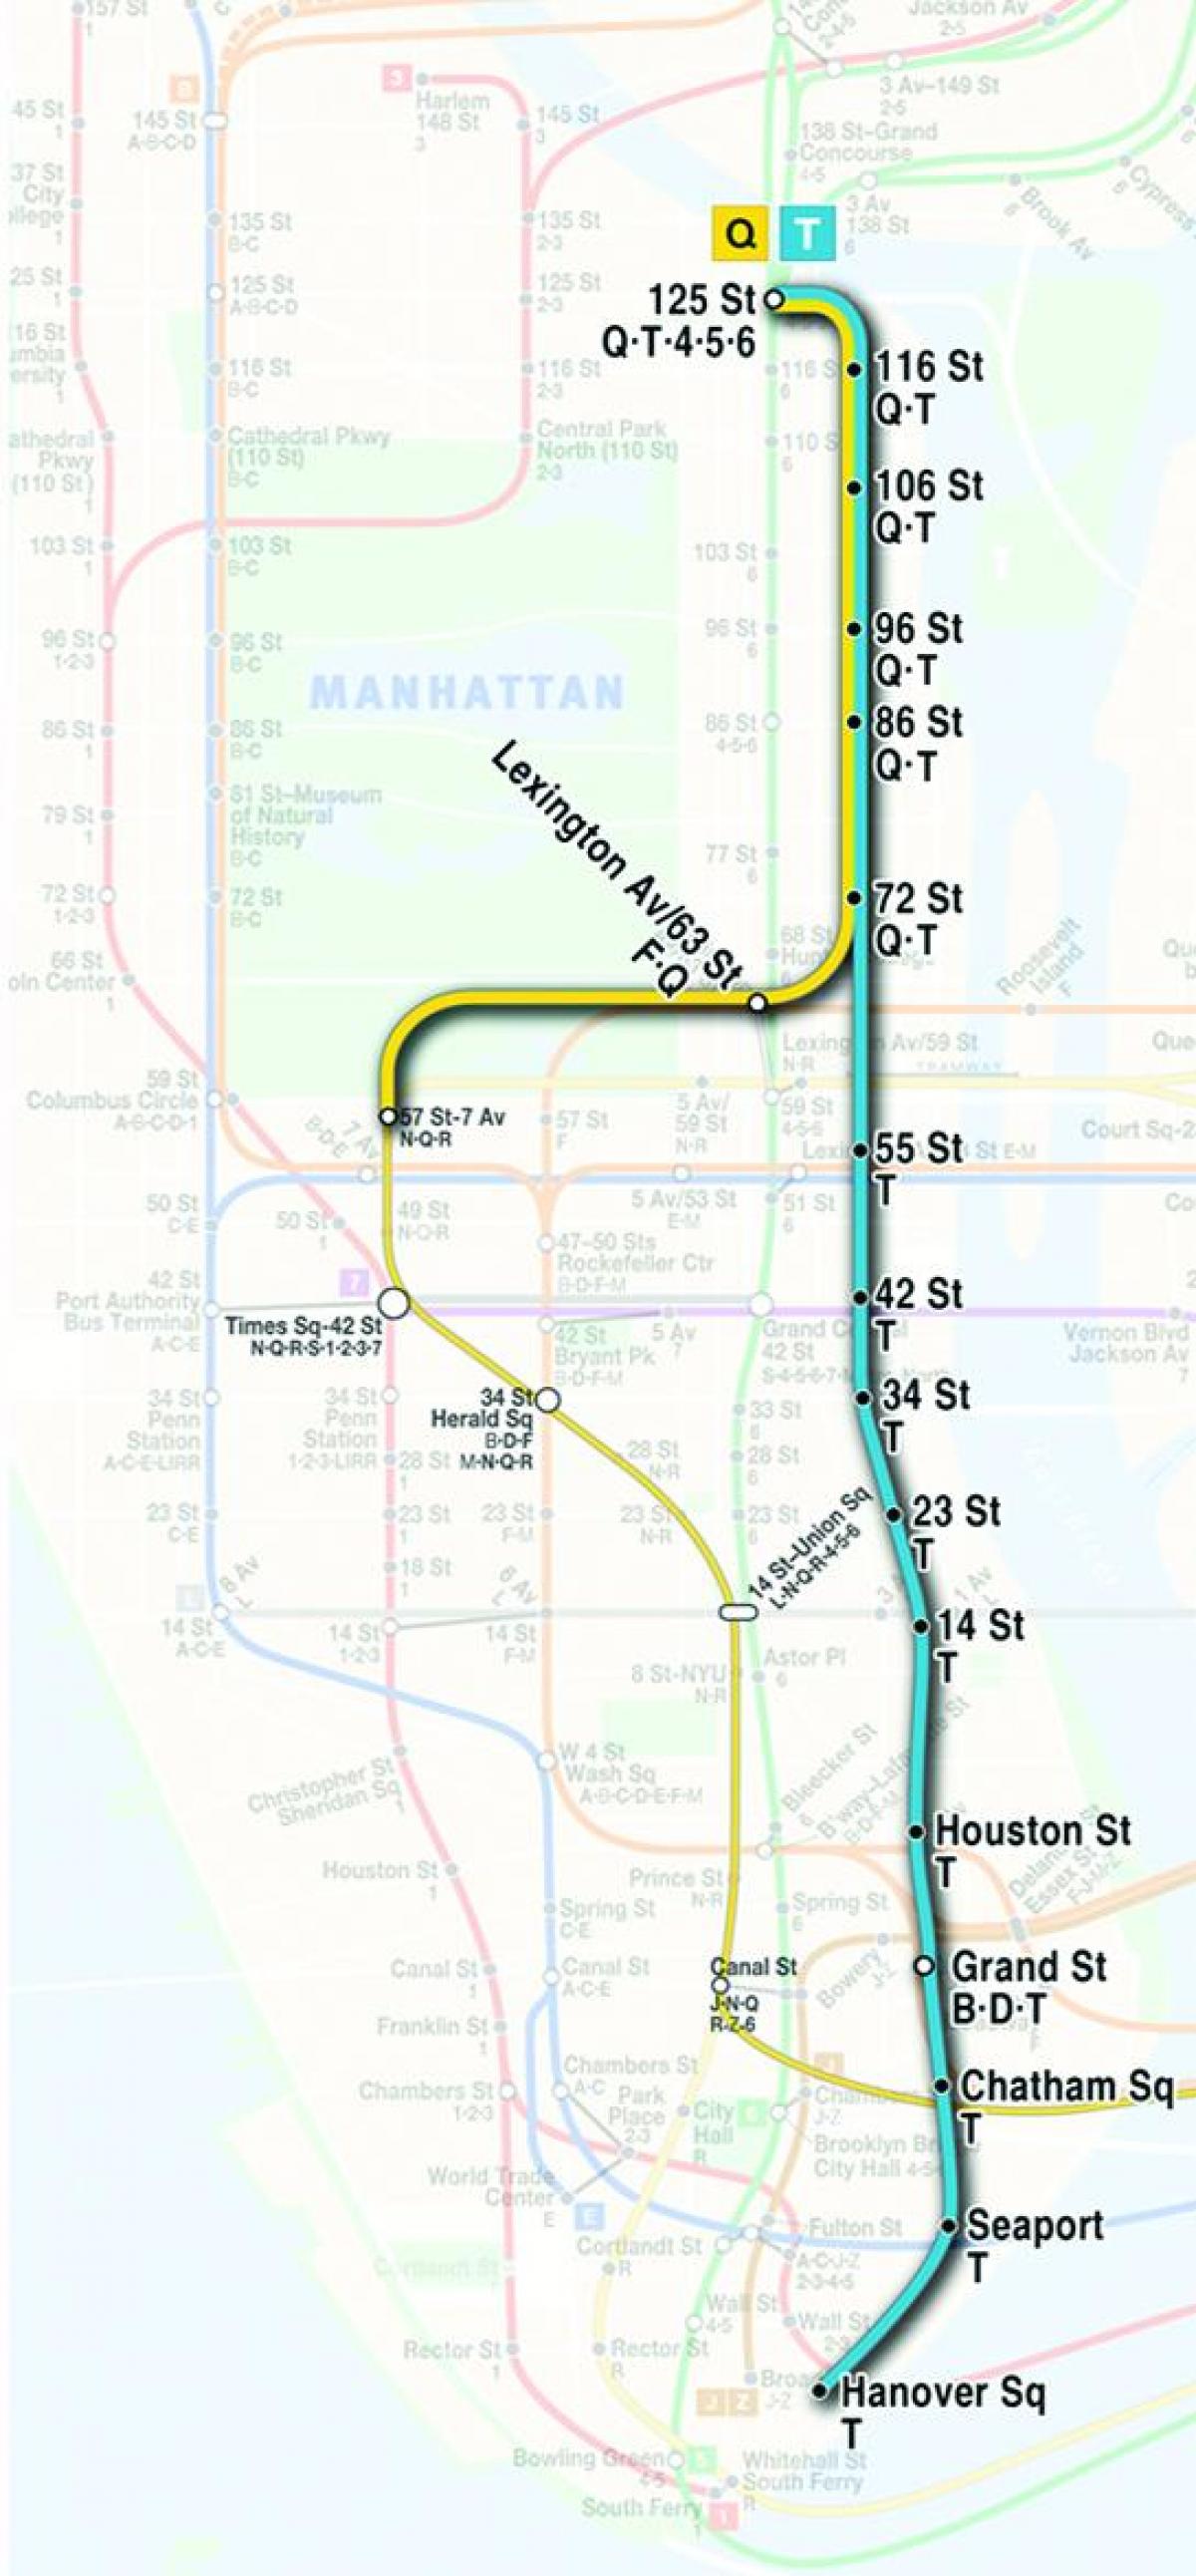 χάρτη του second avenue του μετρό